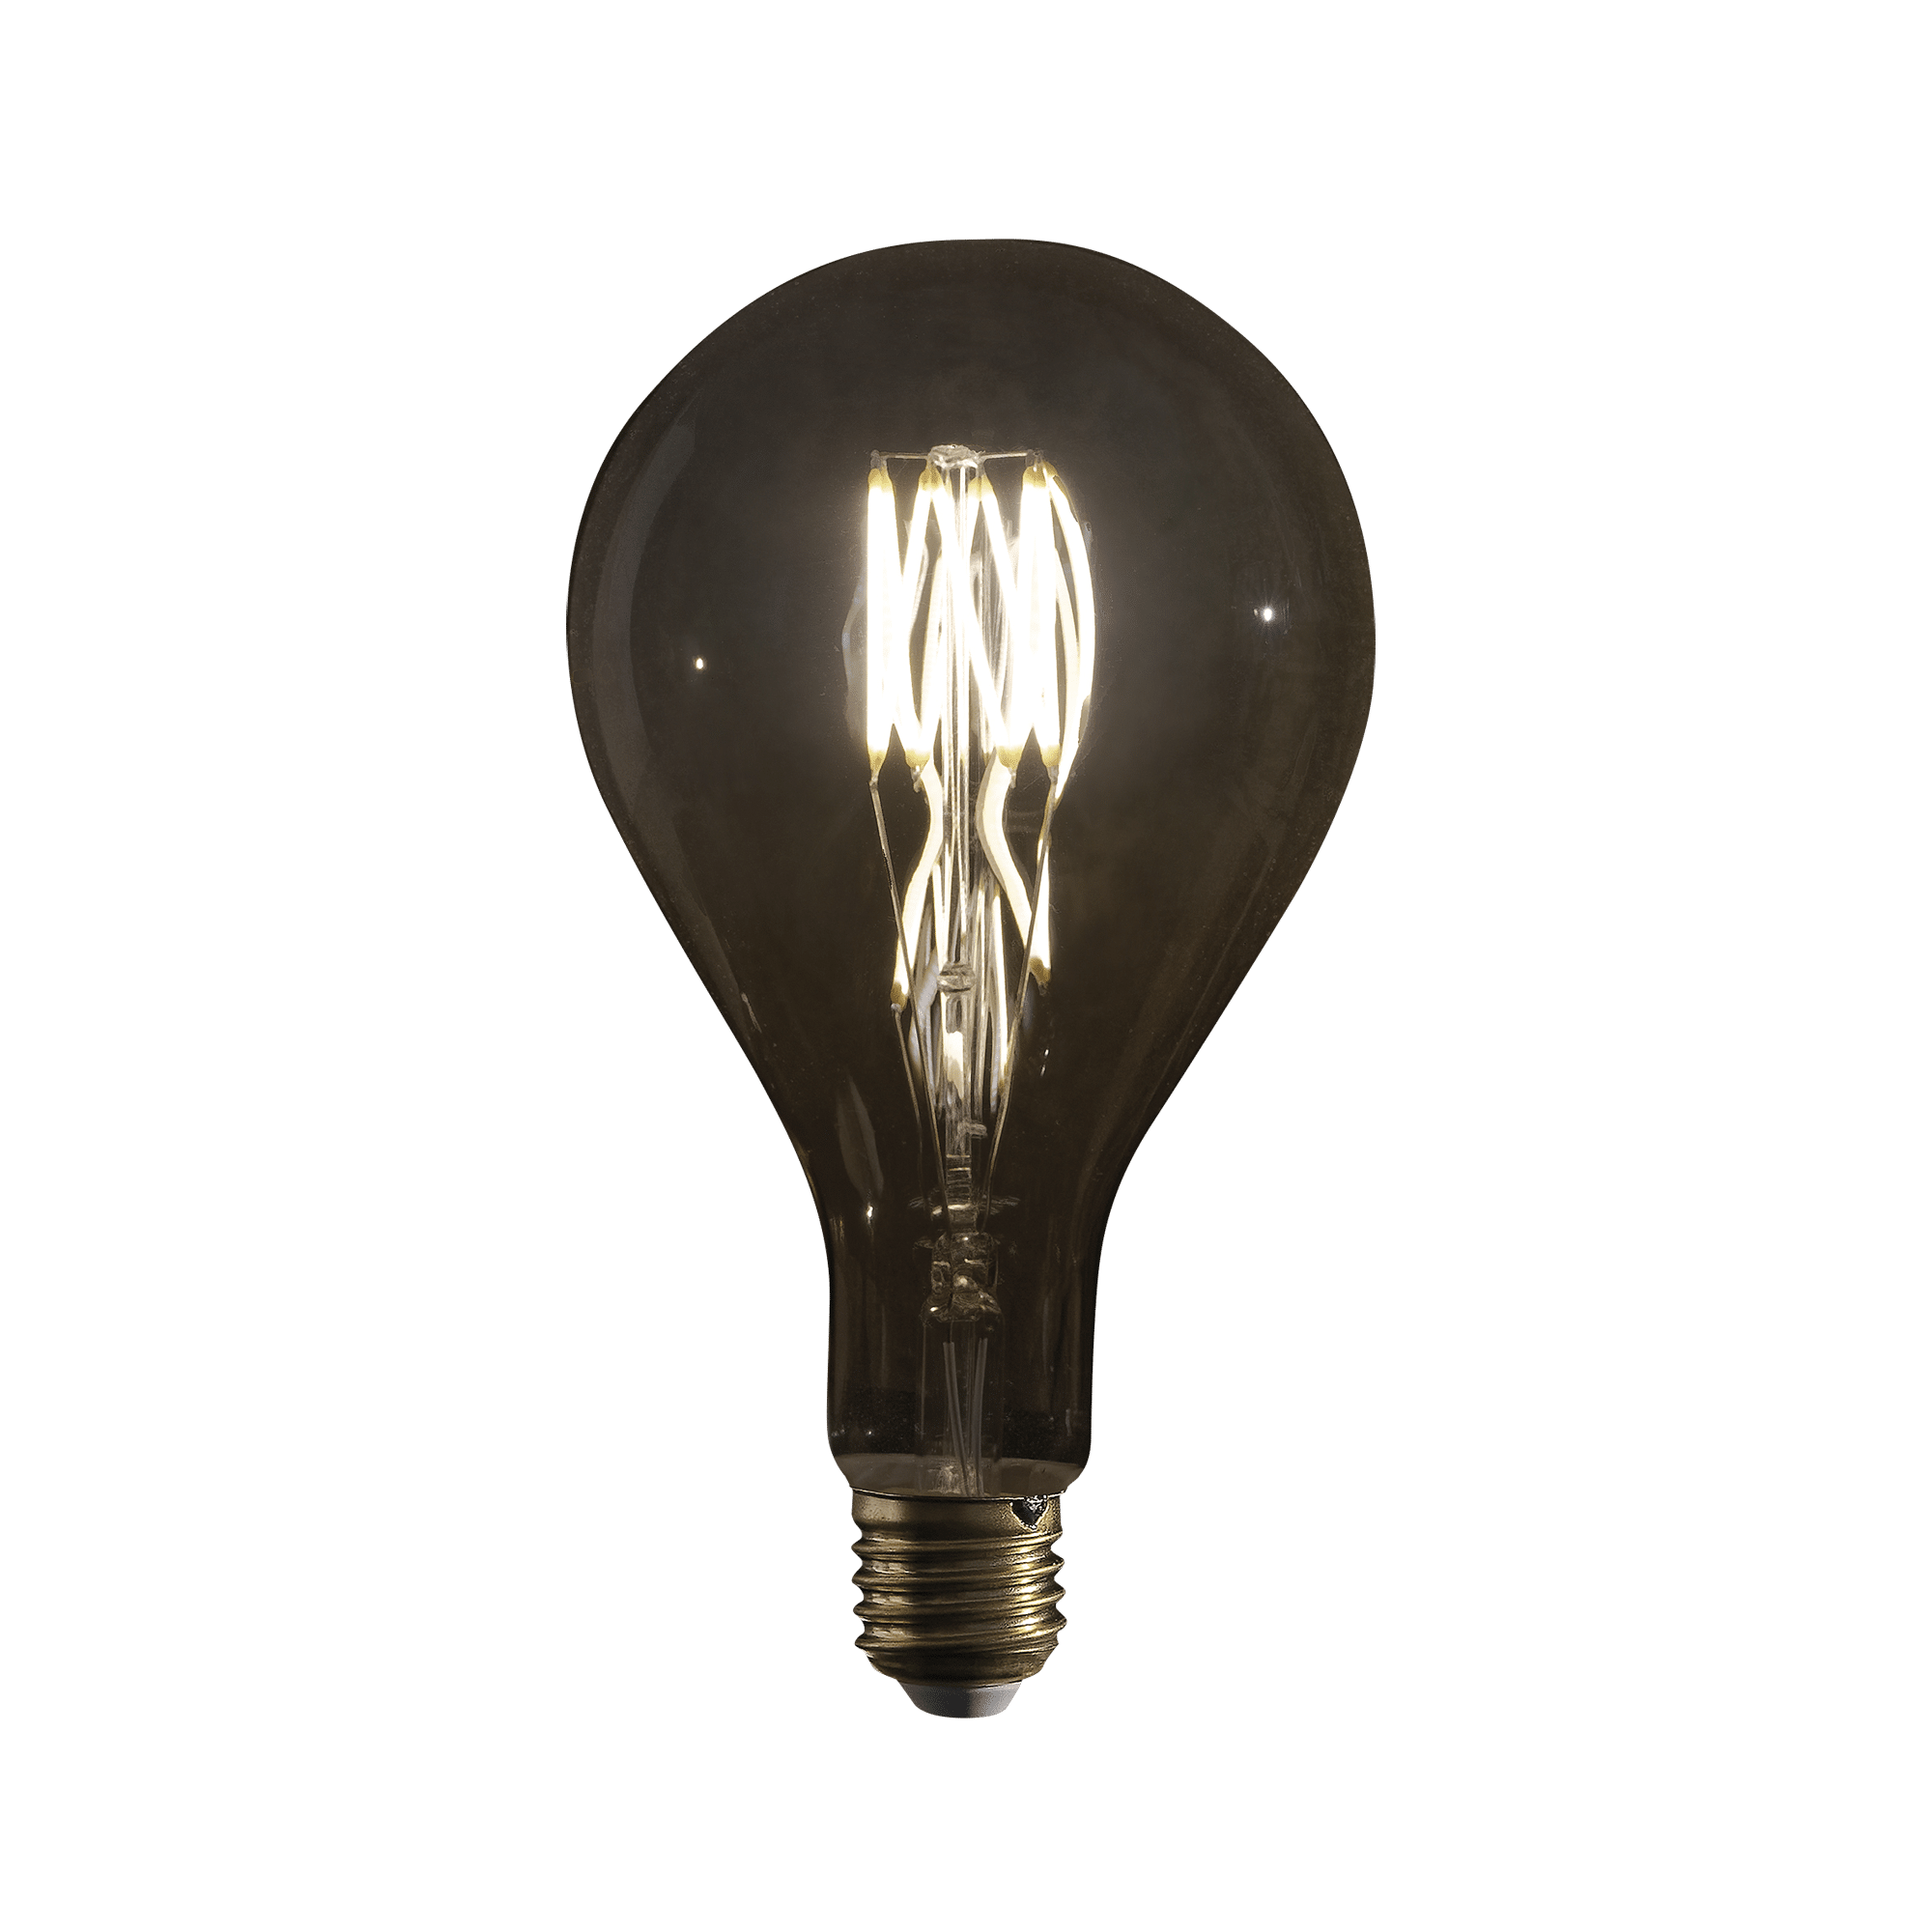 LED Filament Bulb PS35 - Onlinediscowinkel.nl